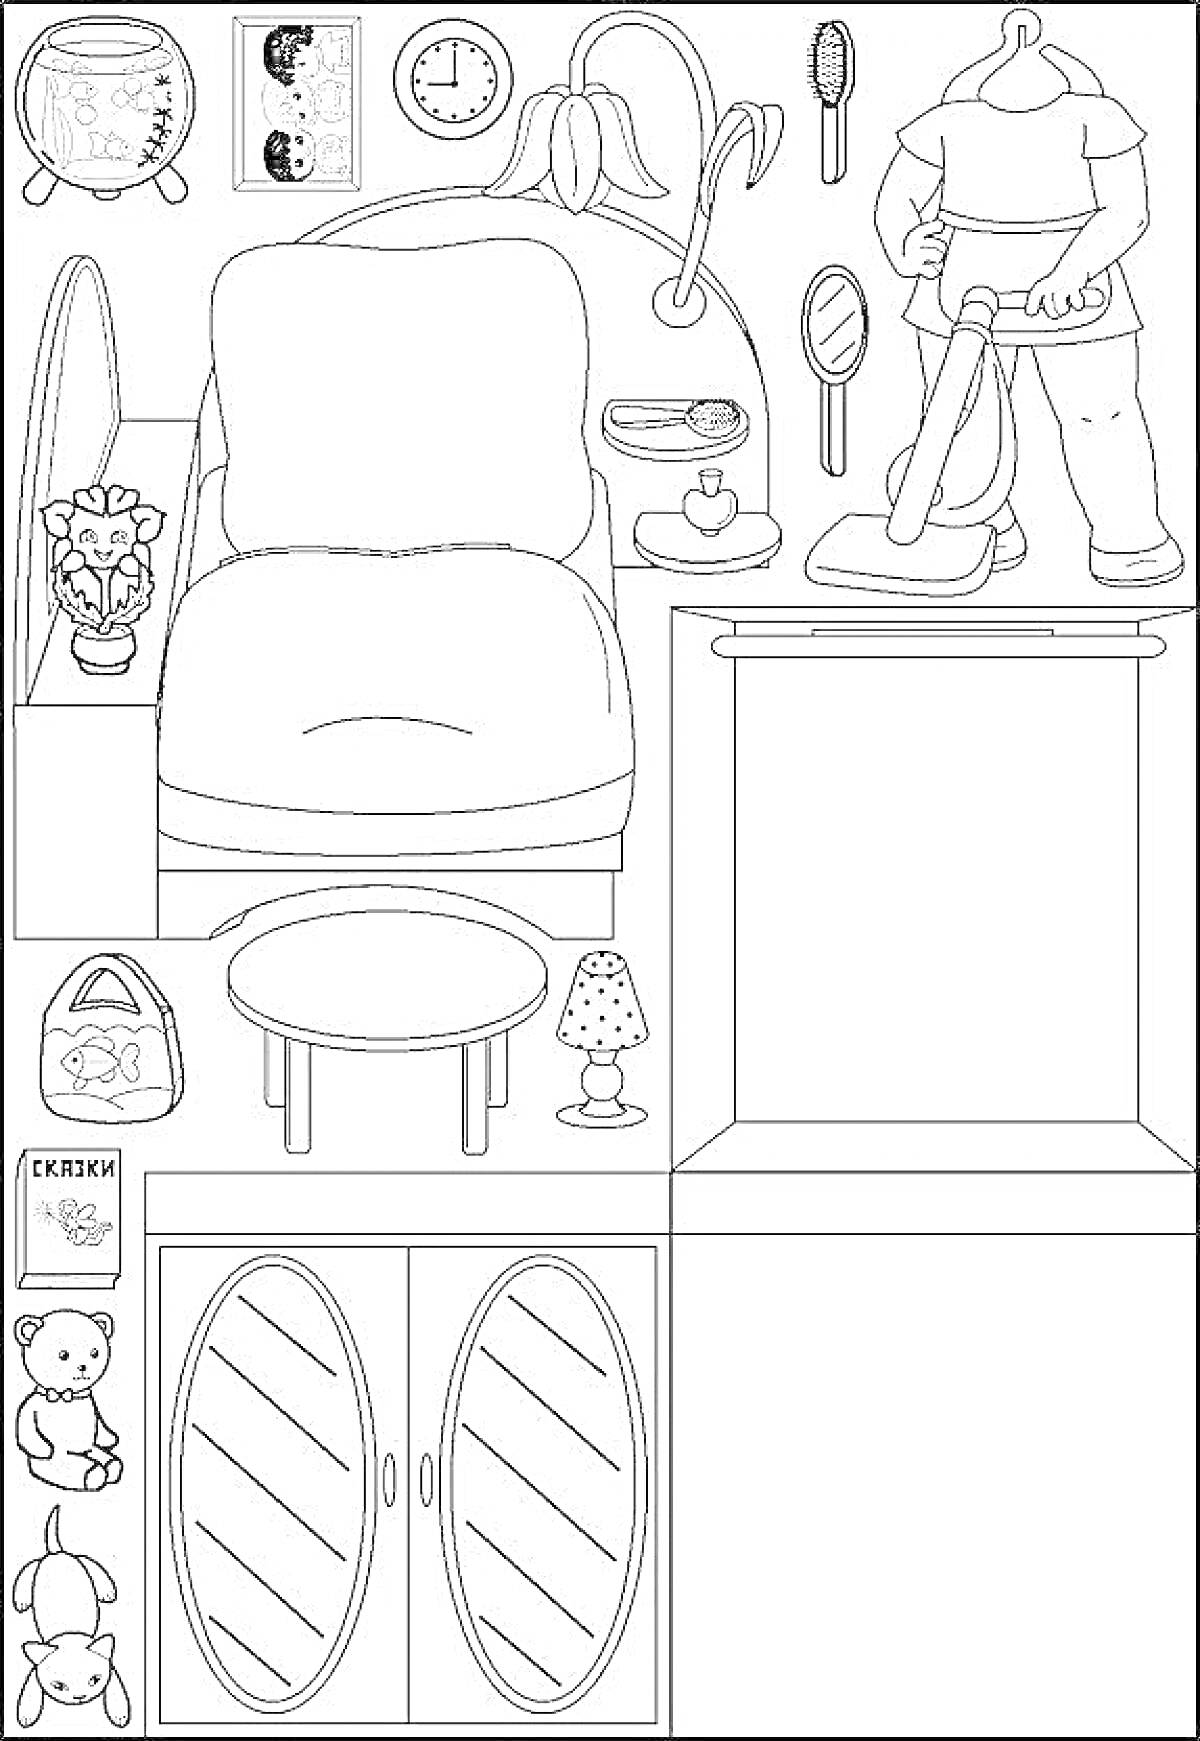 Раскраска Кукольная гостиная Элементы: кресло, настенные часы, торшер, зеркало, настольная лампа, пылесос, цветок в горшке, журнальный столик, школьный рюкзак, полка с книгами, кукла, игрушечный мишка, шкаф с зеркальными дверями